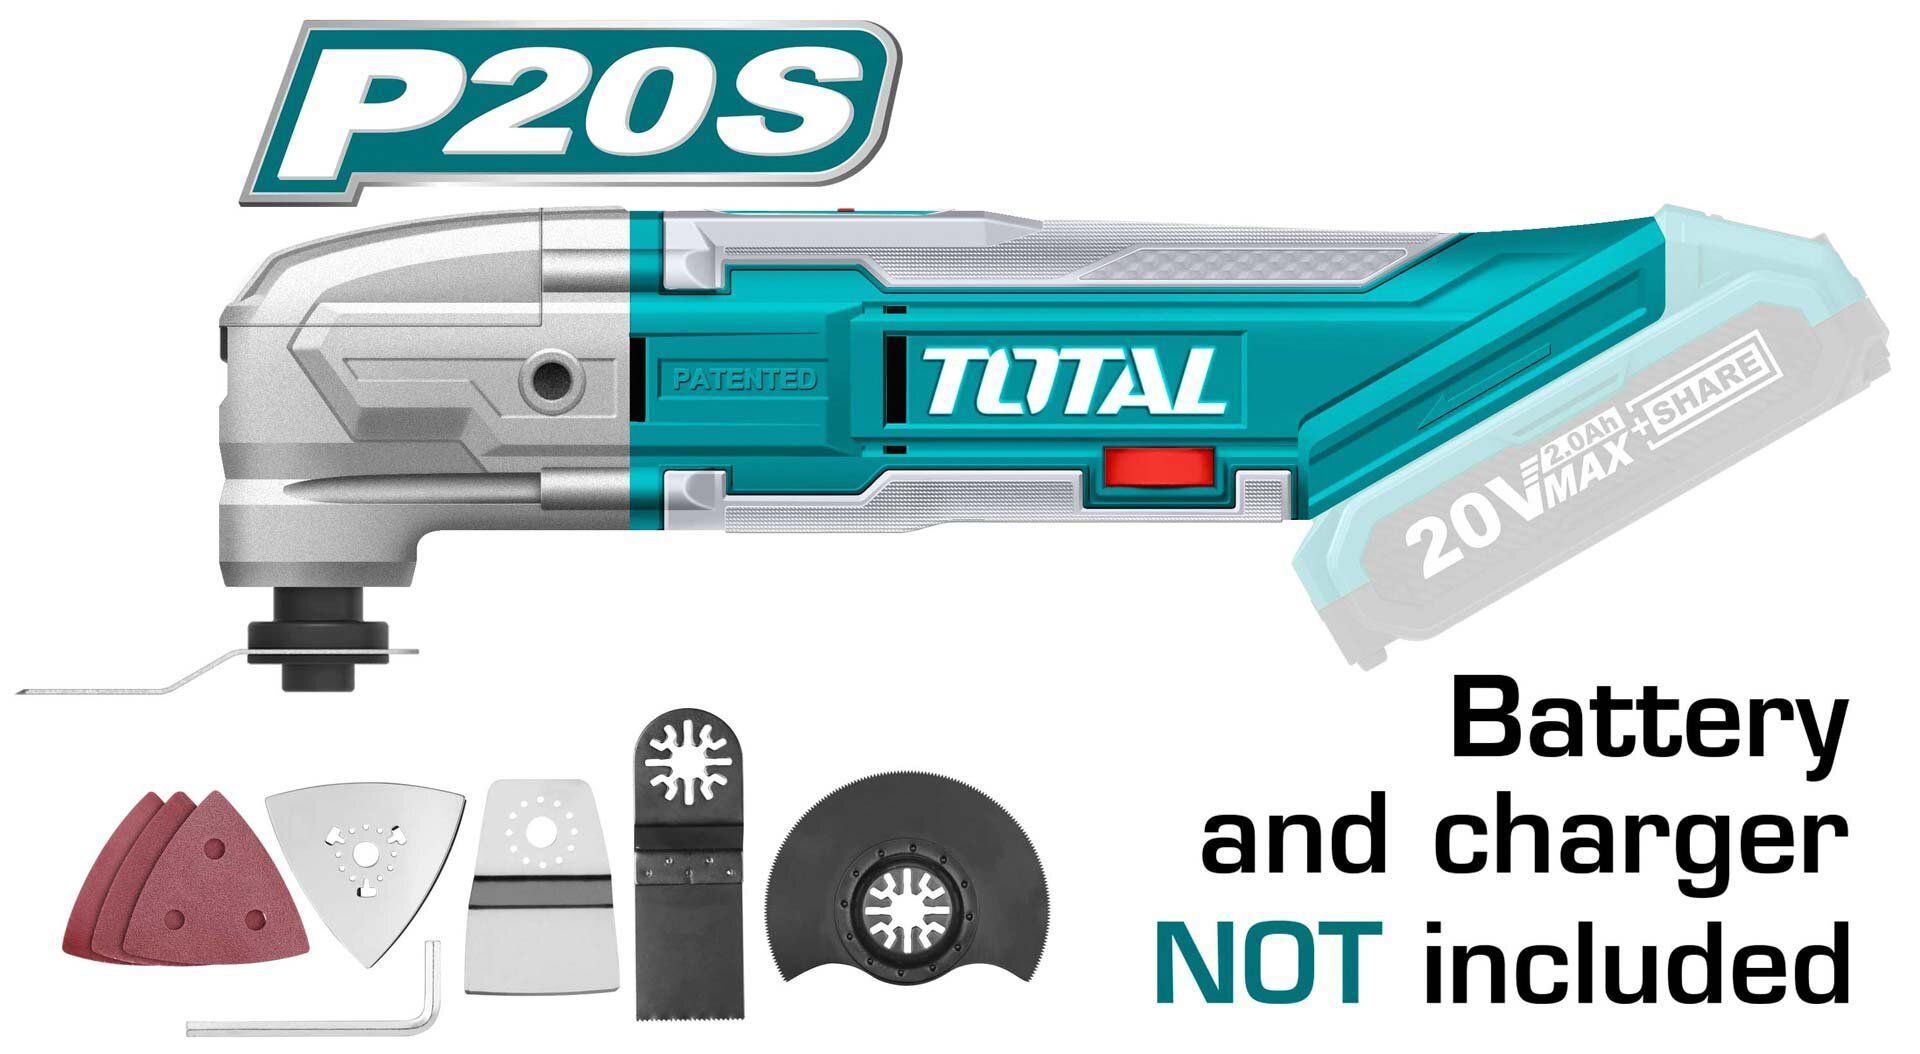  Máy cắt đa năng dùng pin 20V Total TMLI2001 